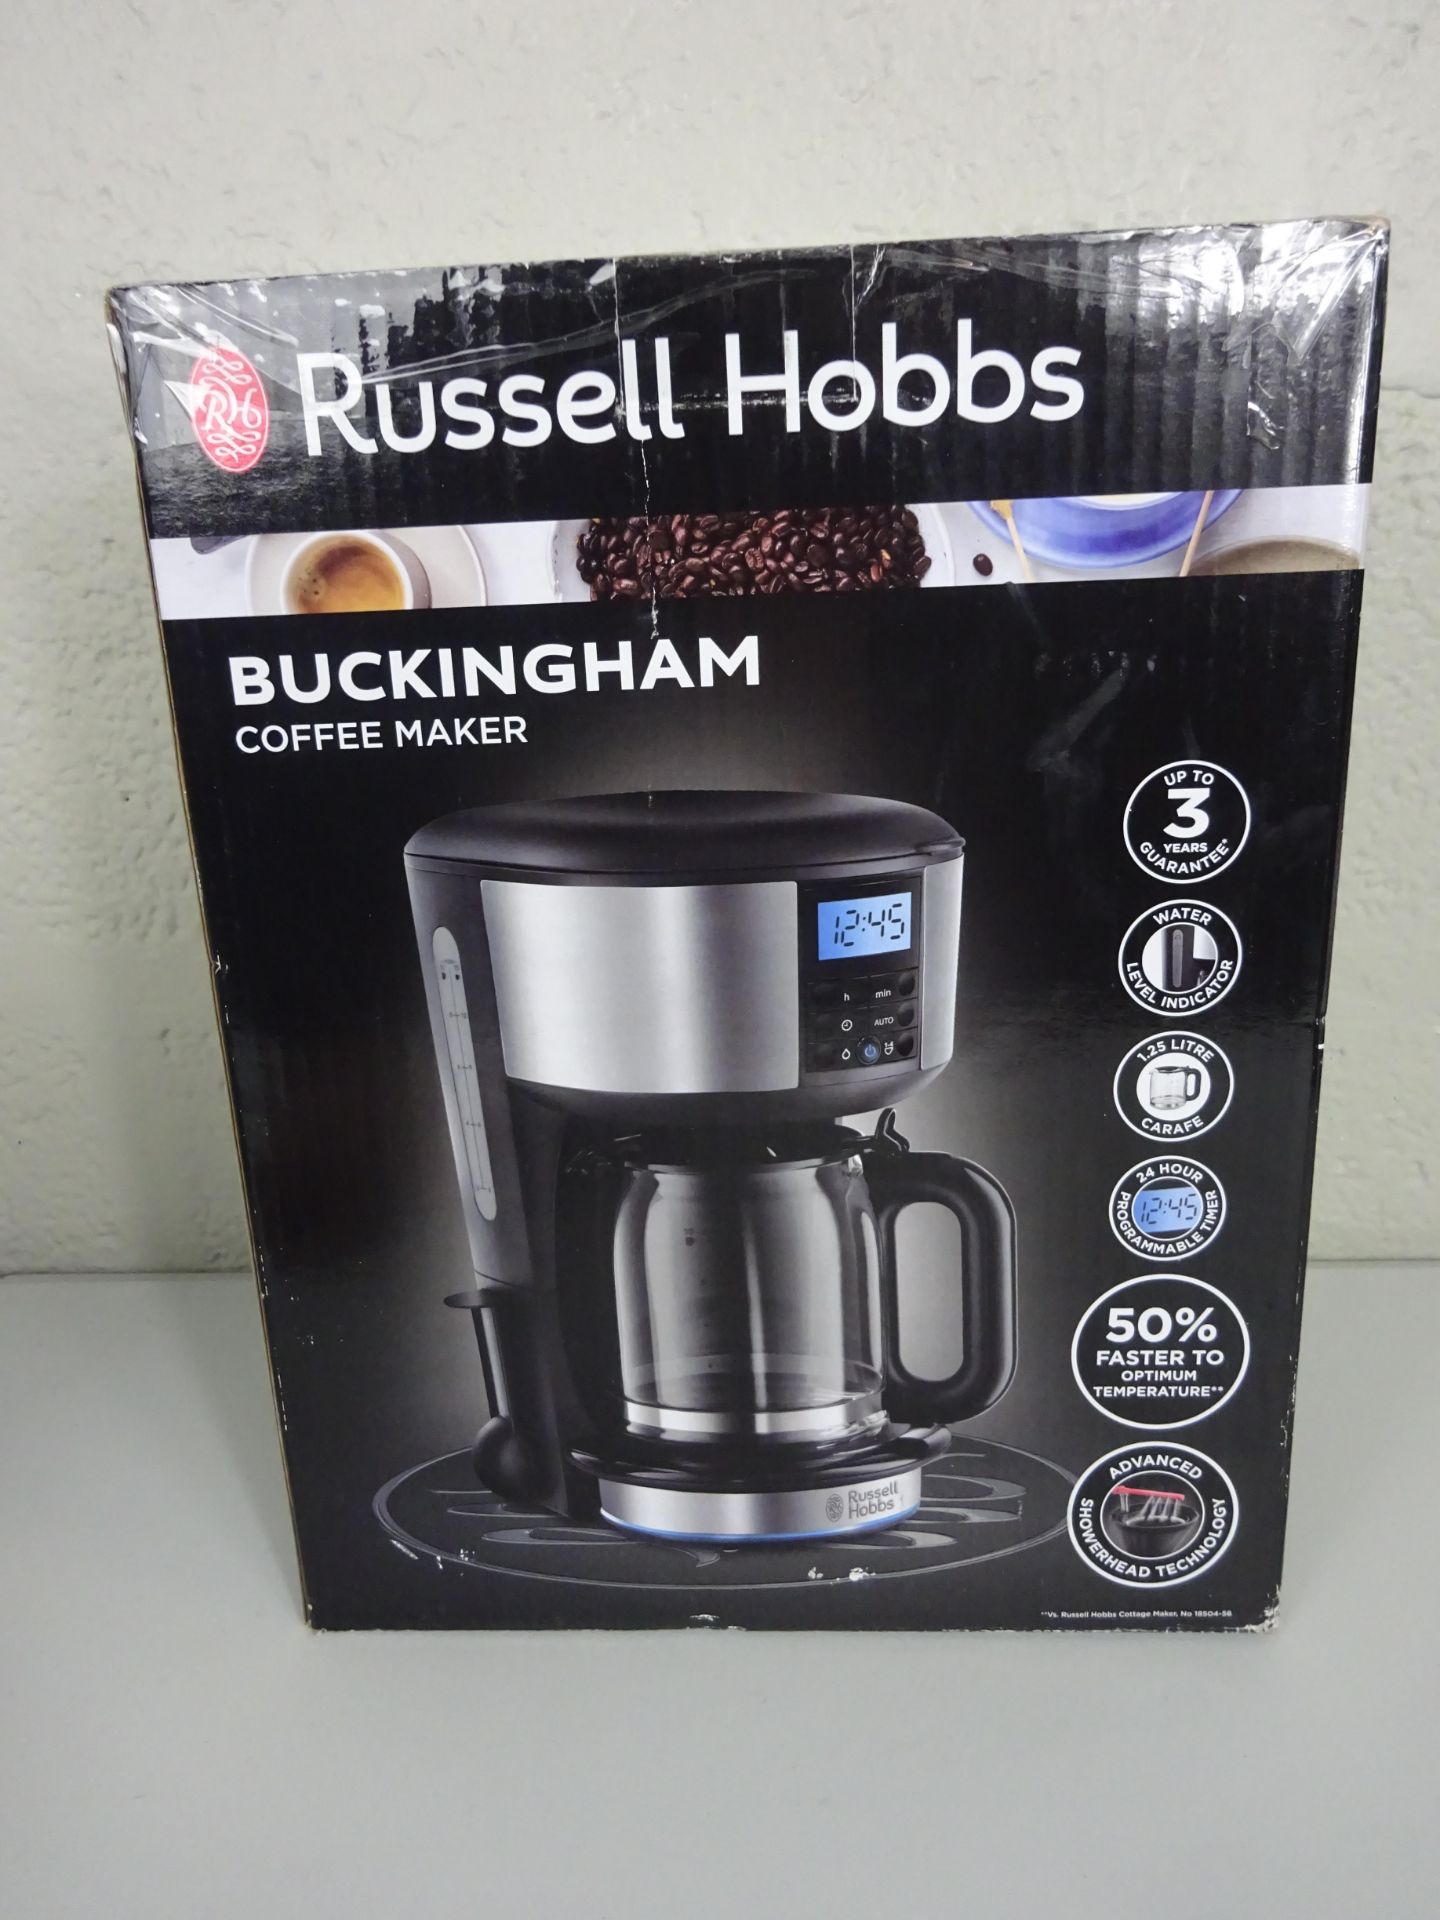 Grade A Russell Hobbs Buckingham Coffee Maker - RRP £45